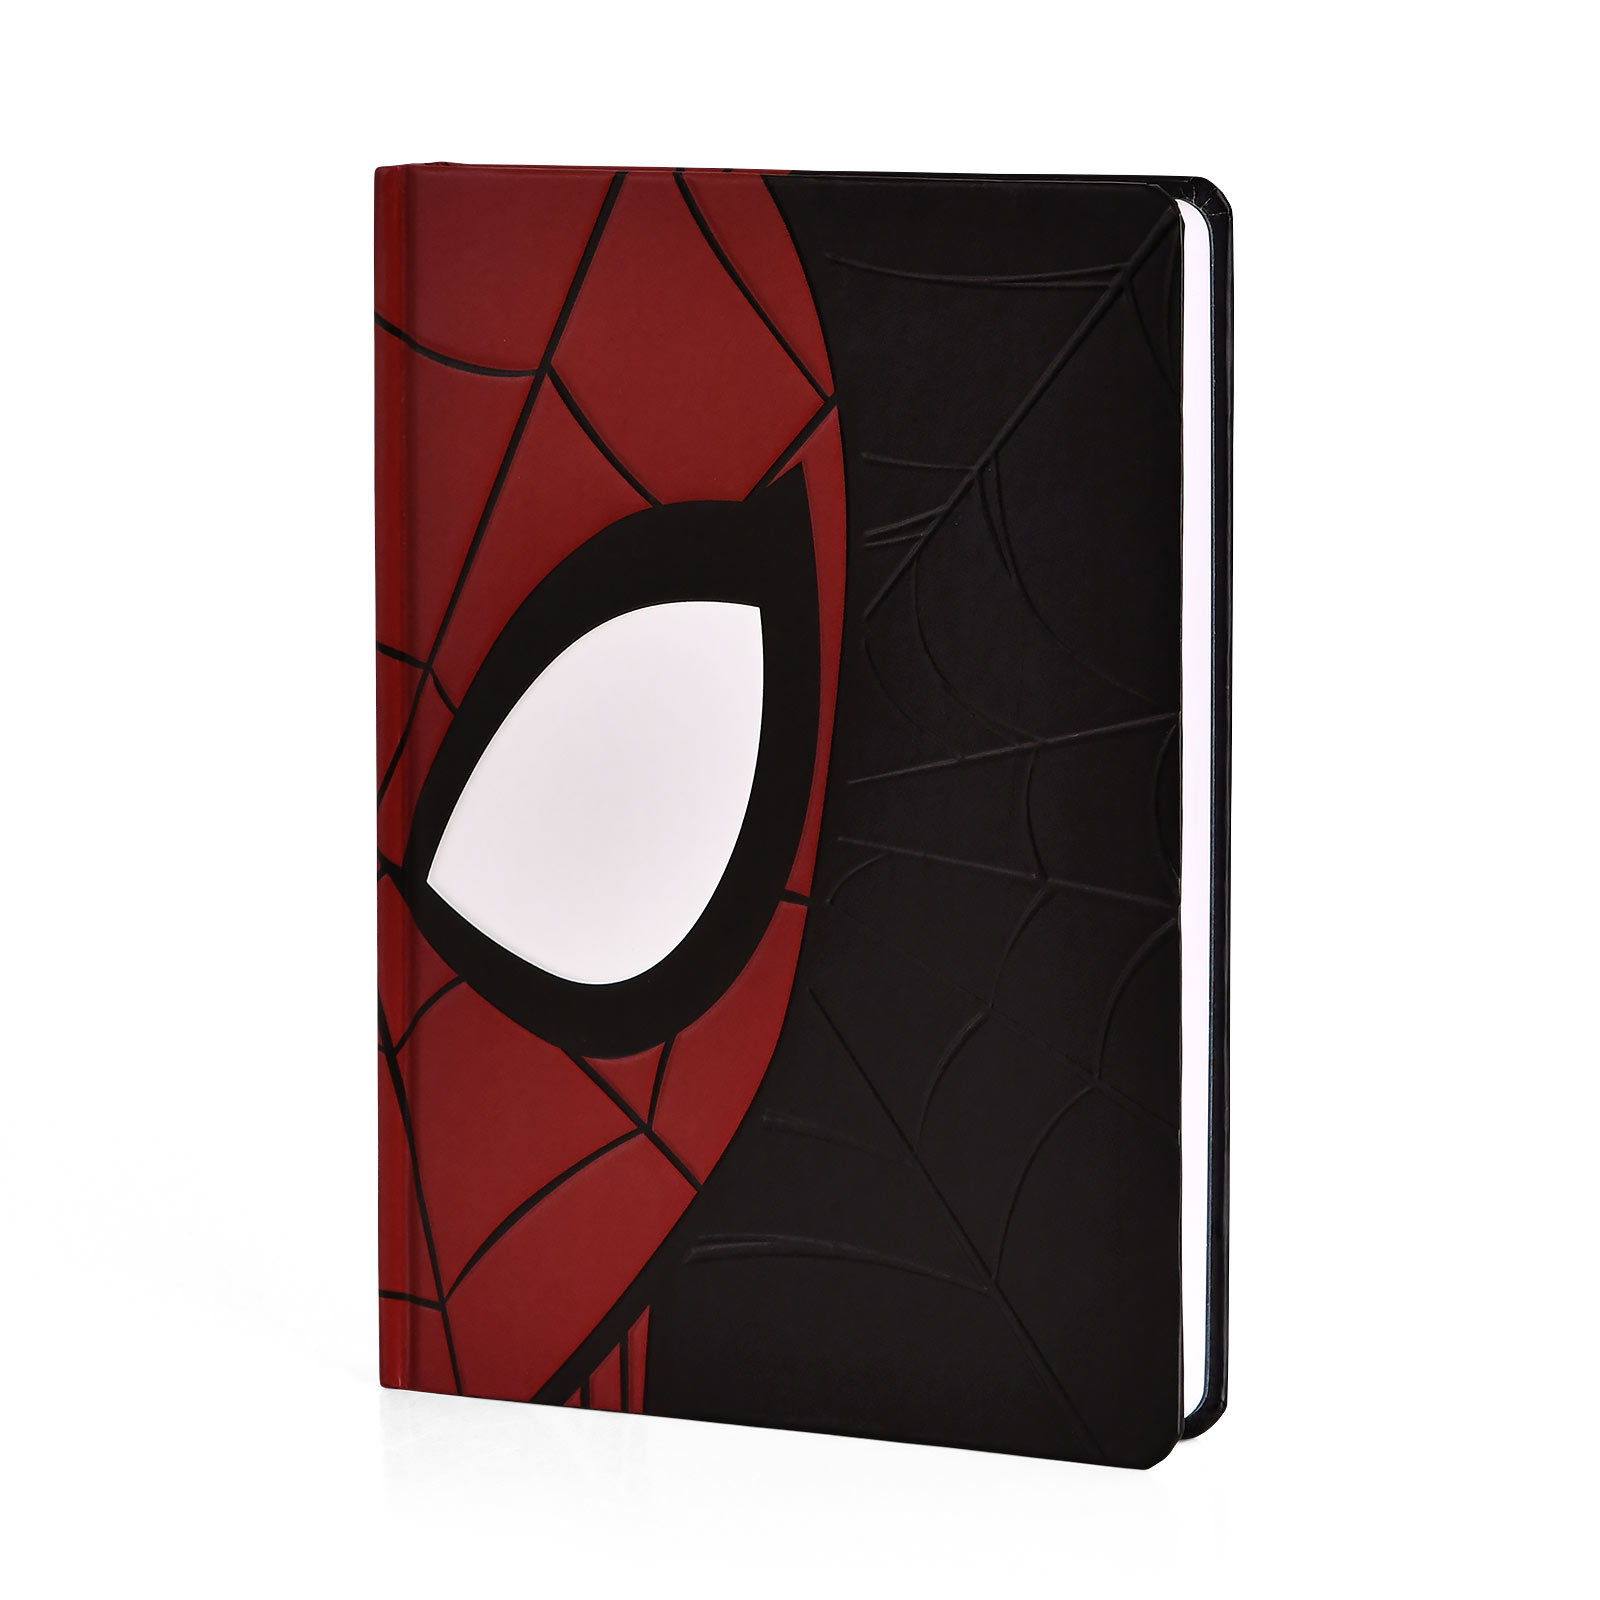 Carnet de notes Spiderman 15 CM